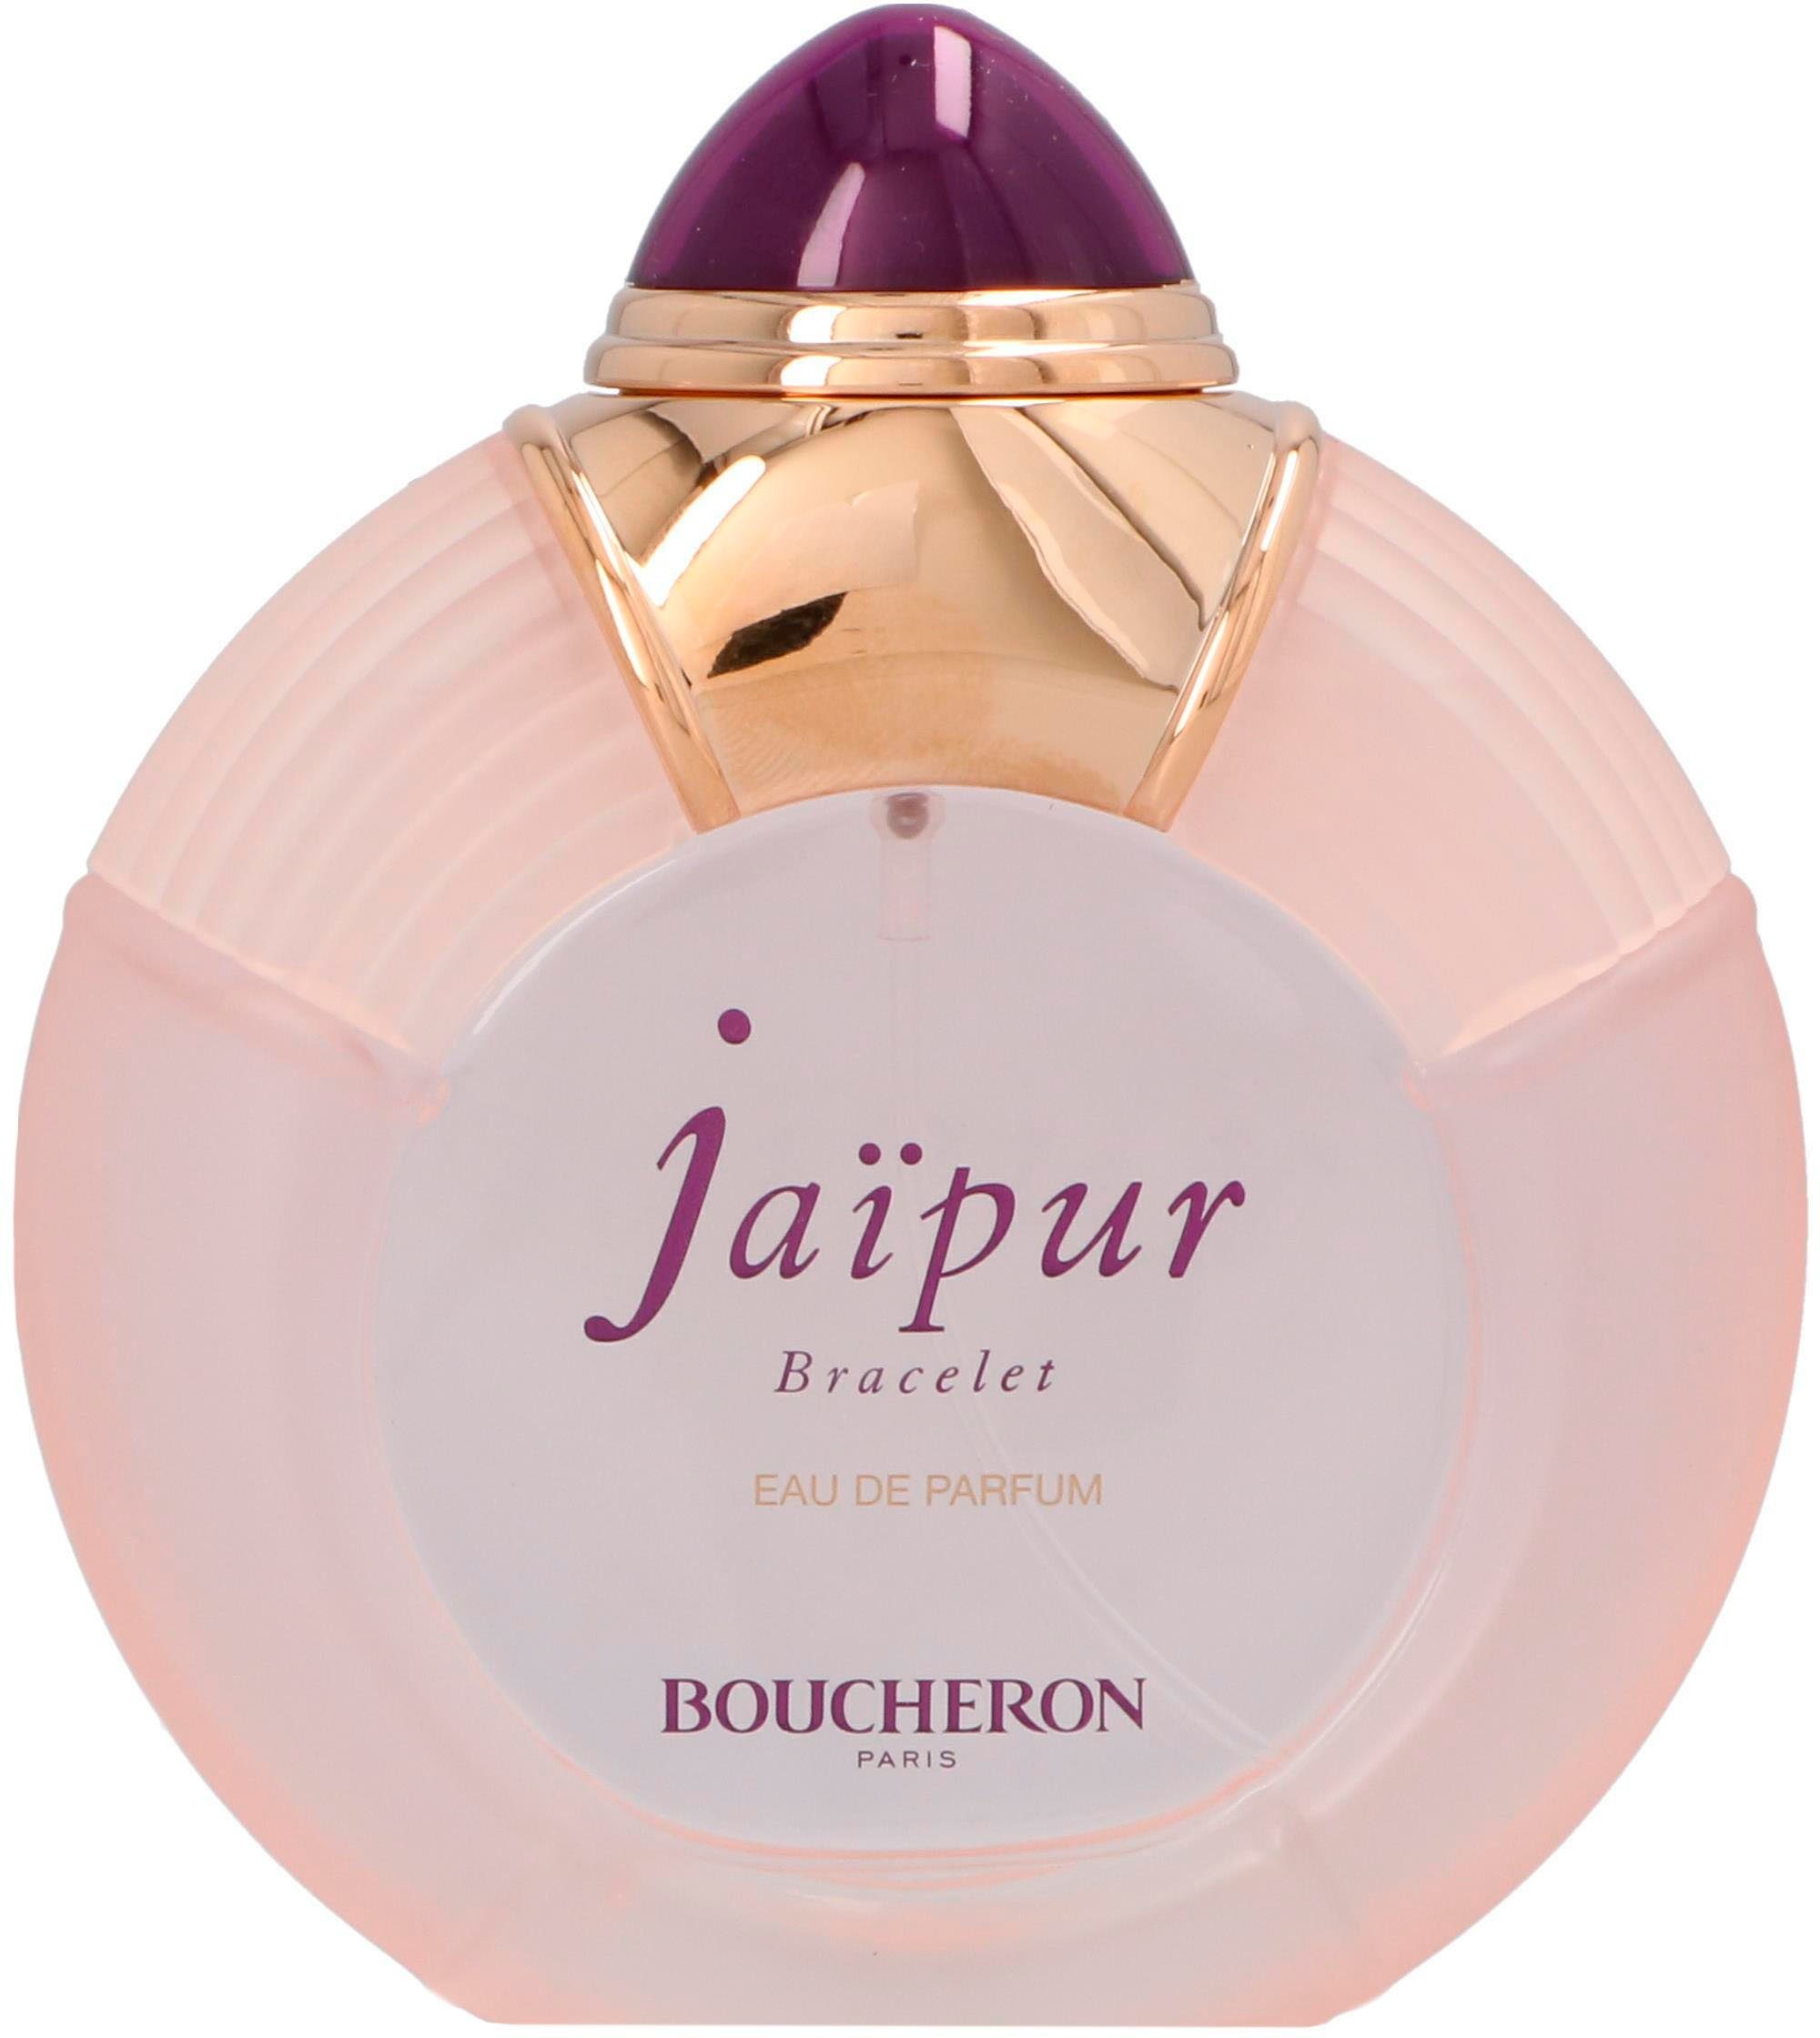 BOUCHERON Eau de Jaipur Bracelet Parfum